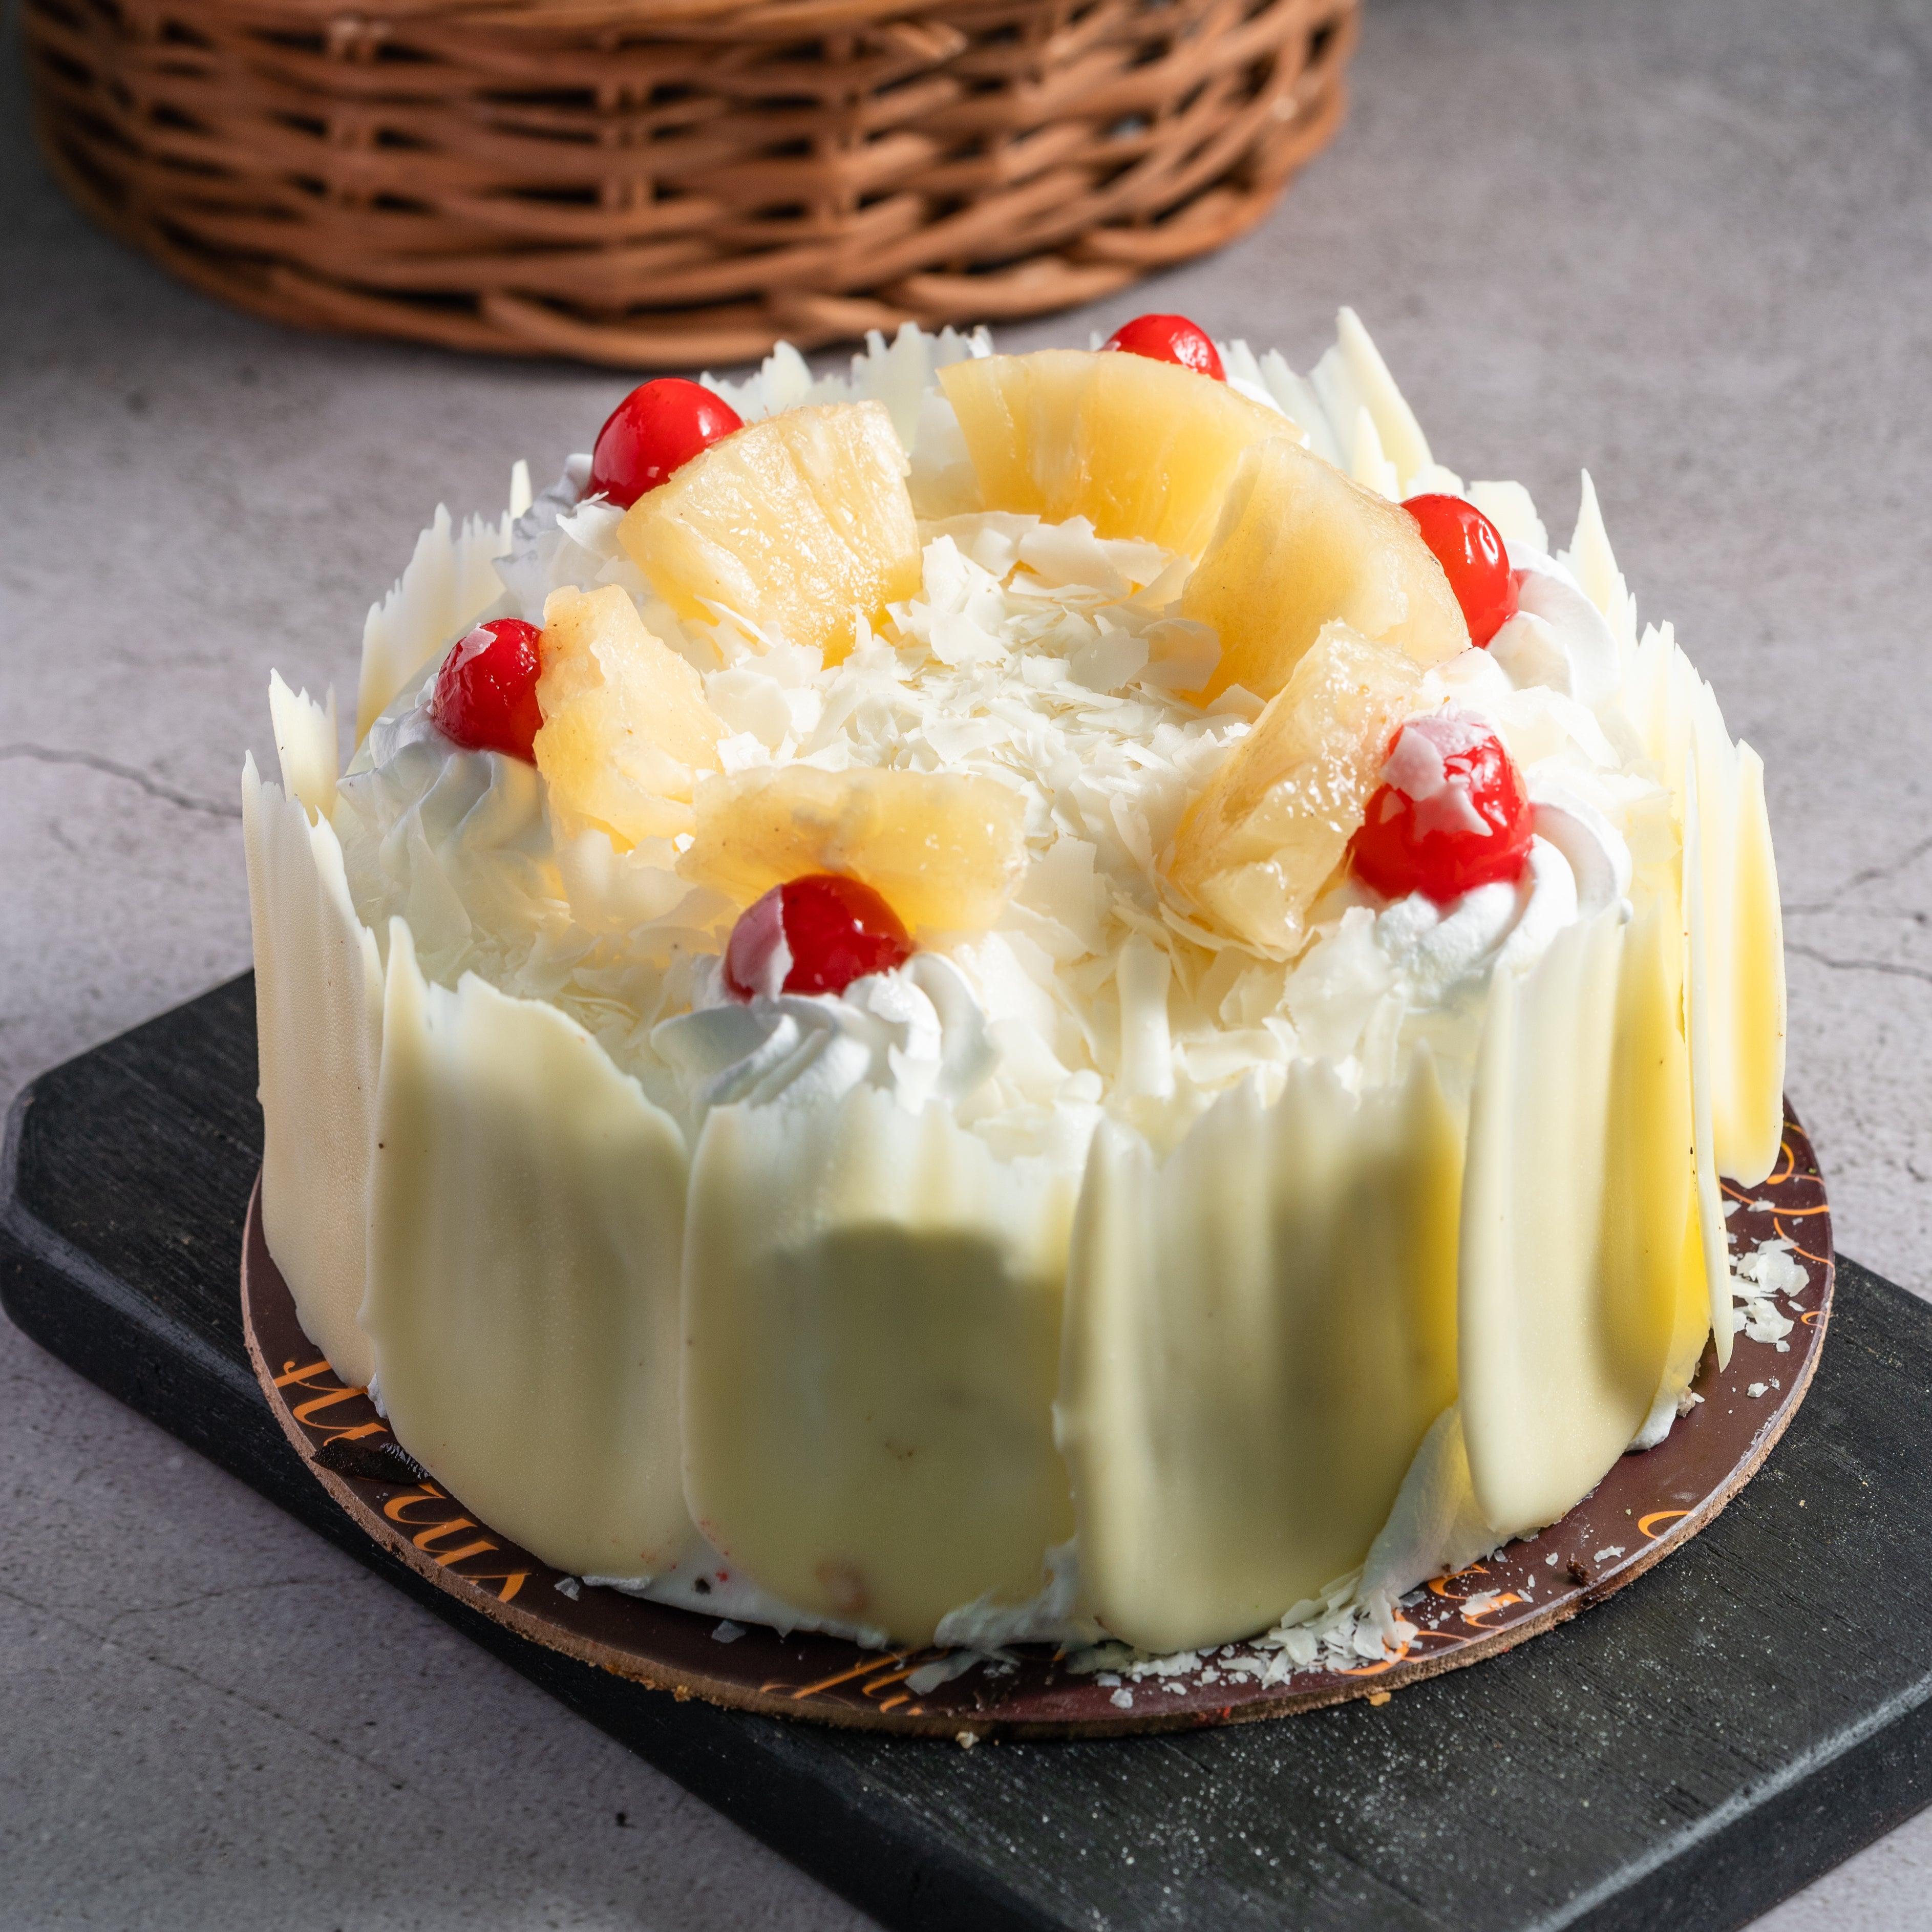 Buy Pineapple cake - Brownsalt Bakery